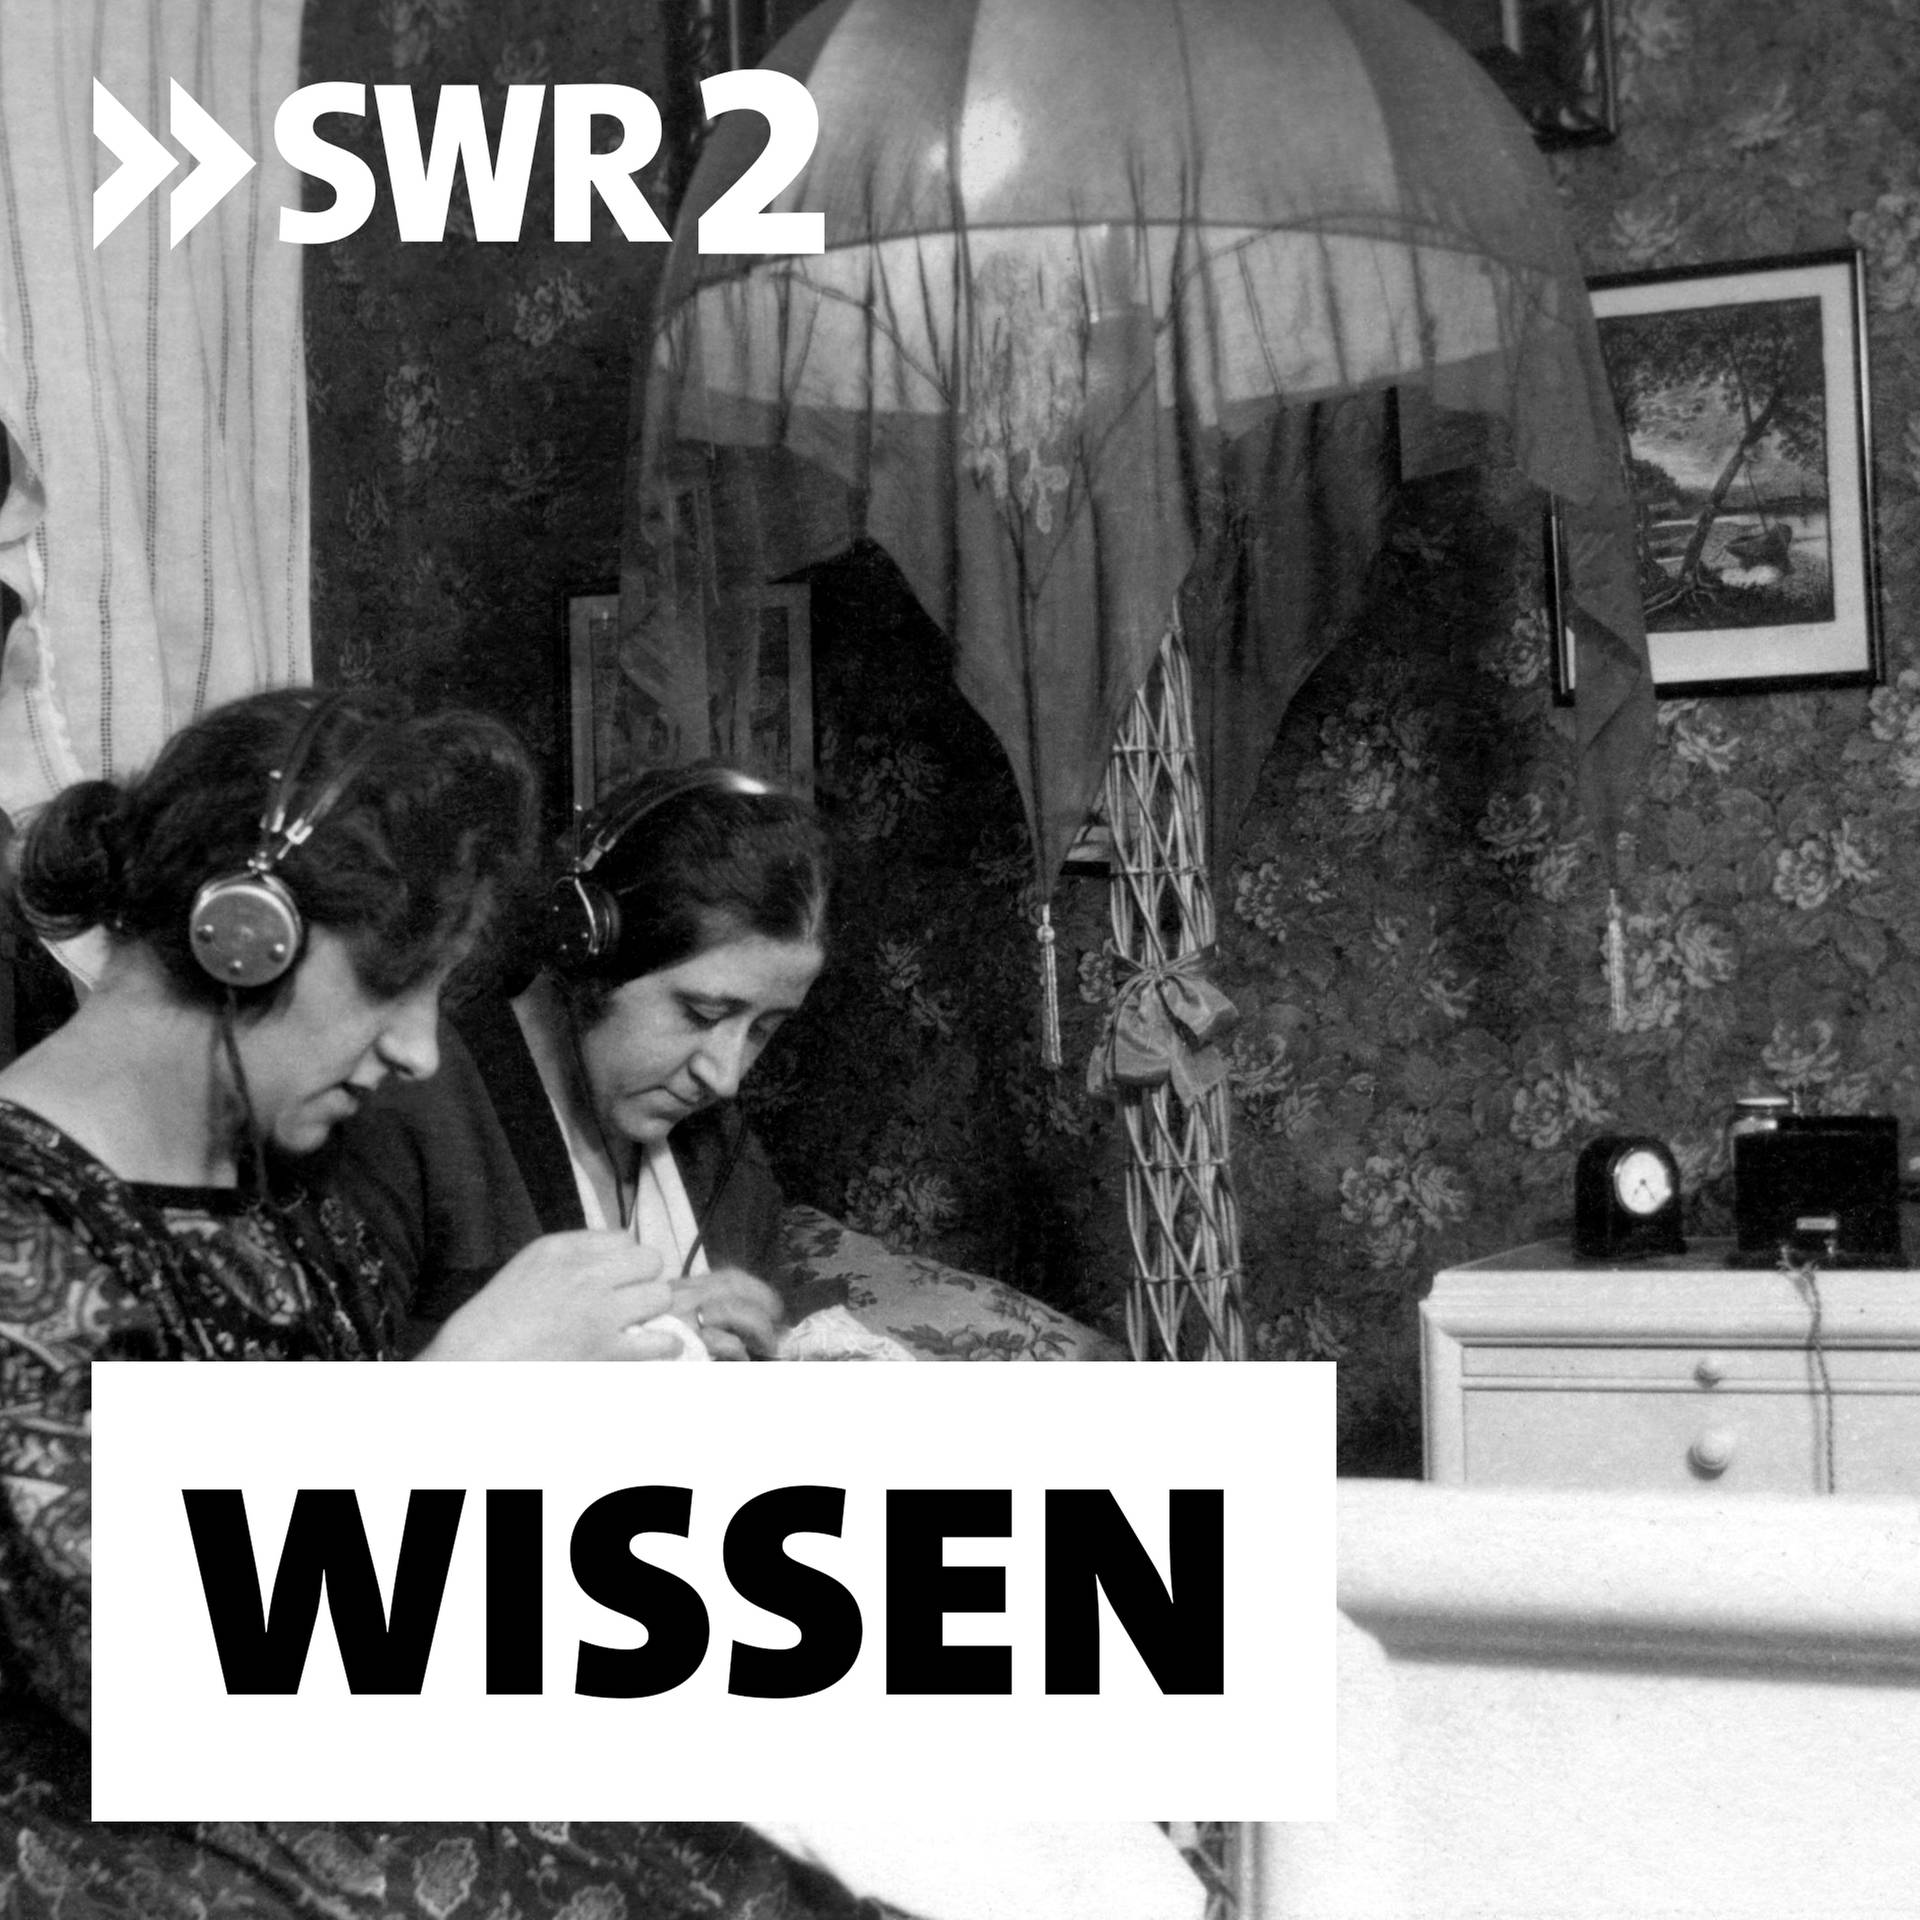 Der Weg zum Rundfunk – Von der ältesten Tonaufnahme bis zur ersten Sendung | 100 Jahre Radio | Archivradio-Gespräch